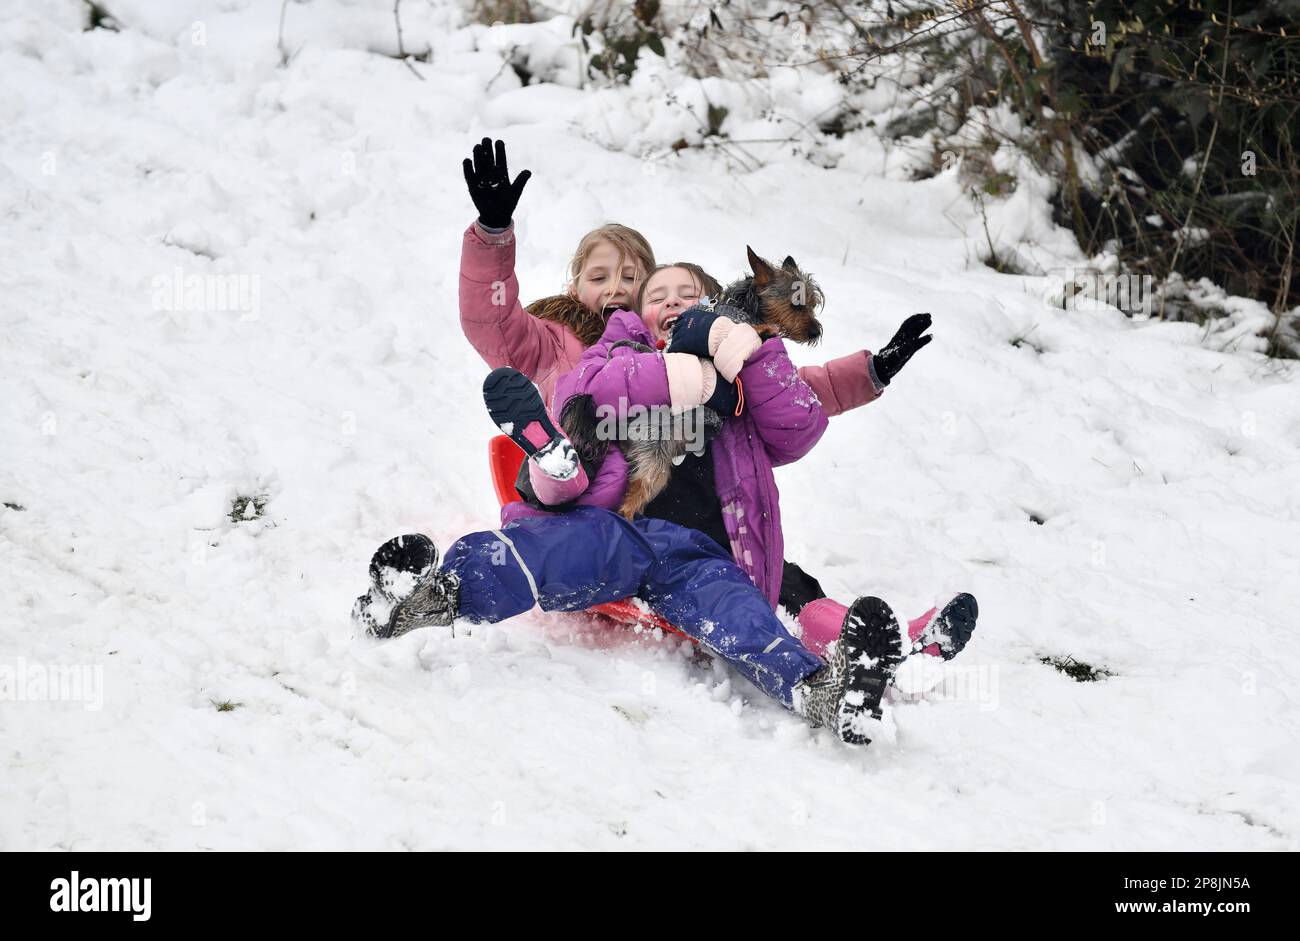 Divertimento sulla neve. Ragazze giovani che slittano con il loro cane da compagnia. Regno Unito inverno inverni neve slitta toboga toboga Credit: David Bagnall Foto Stock